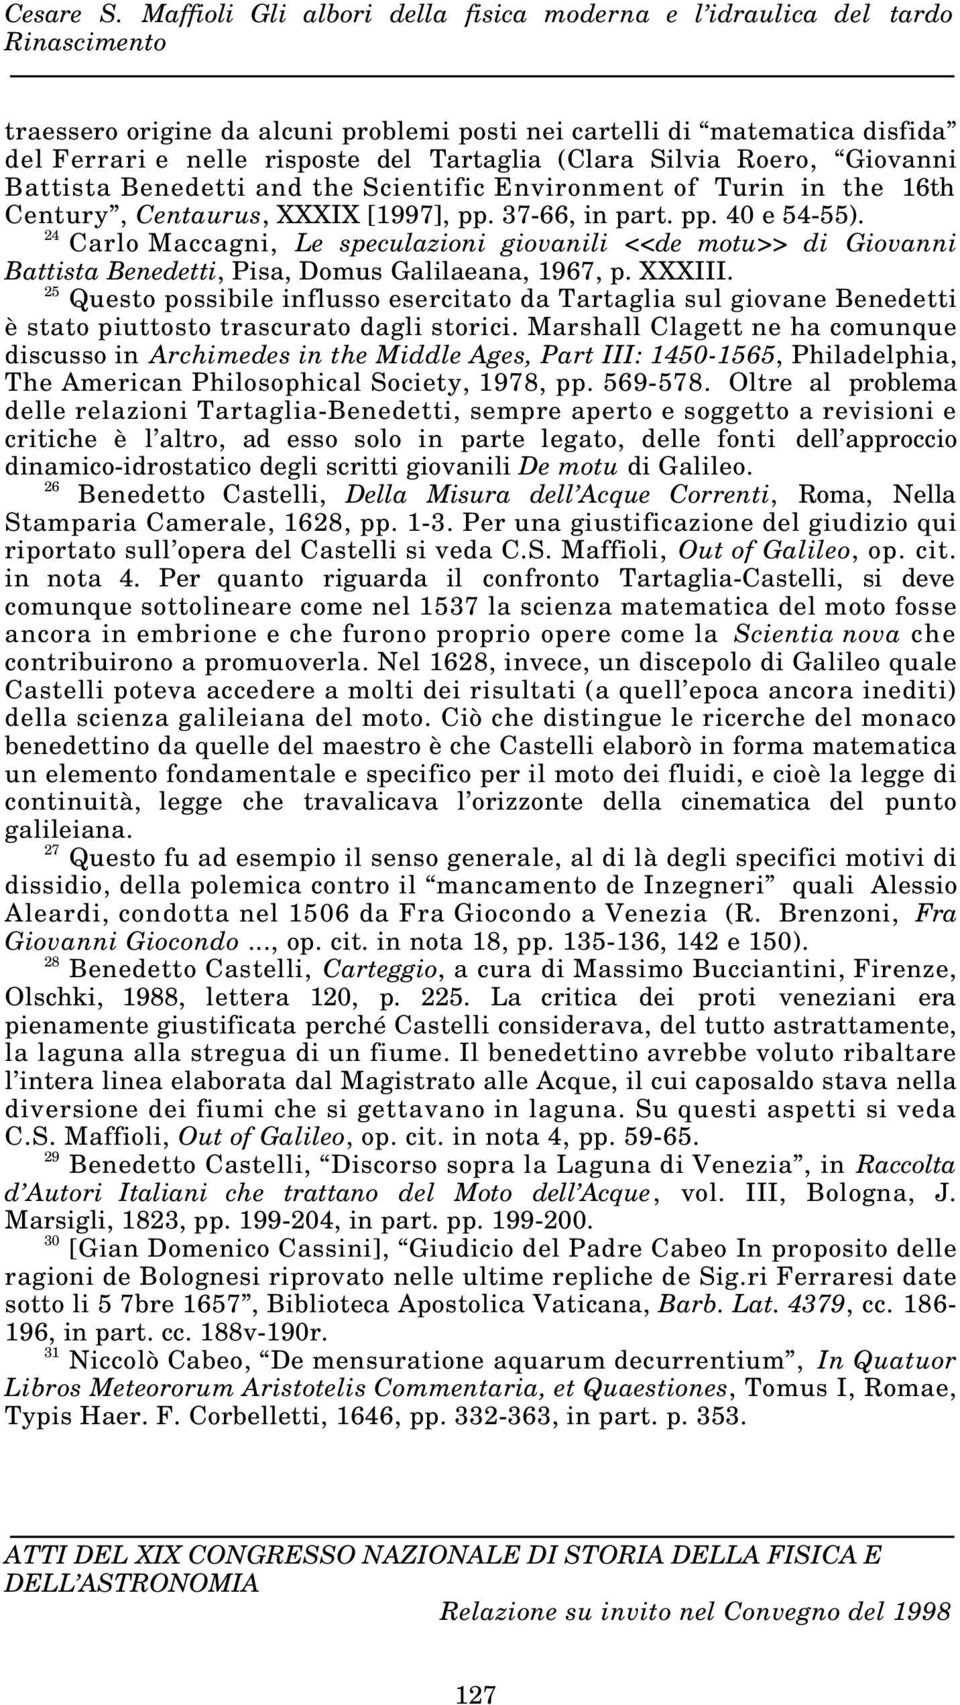 24 Carlo Maccagni, Le speculazioni giovanili <<de motu>> di Giovanni Battista Benedetti, Pisa, Domus Galilaeana, 1967, p. XXXIII.